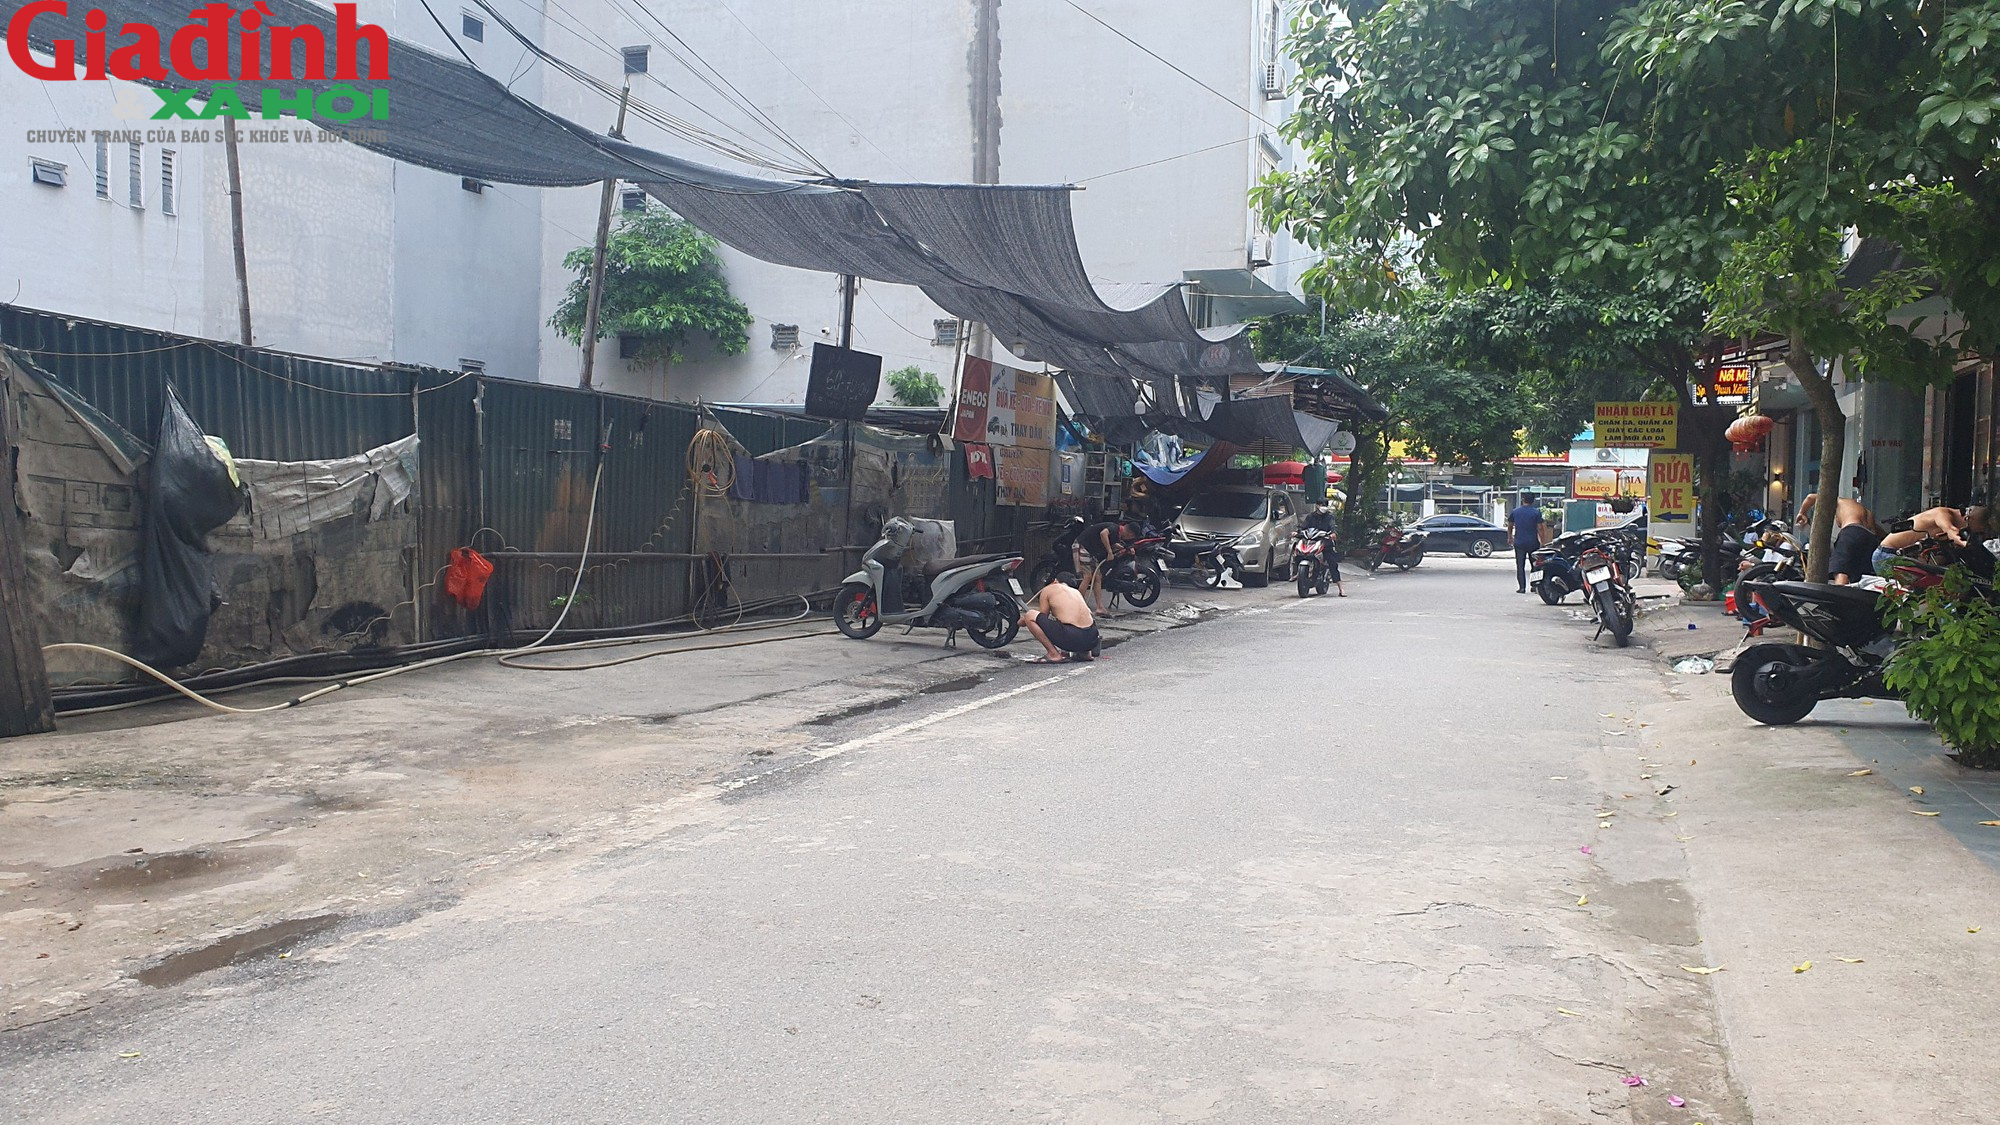 Hà Nội: Nhiều địa điểm kinh doanh ở phường Mỹ Đình 2 xây sơ xài, tiềm ẩn nguy cơ cháy nổ - Ảnh 14.